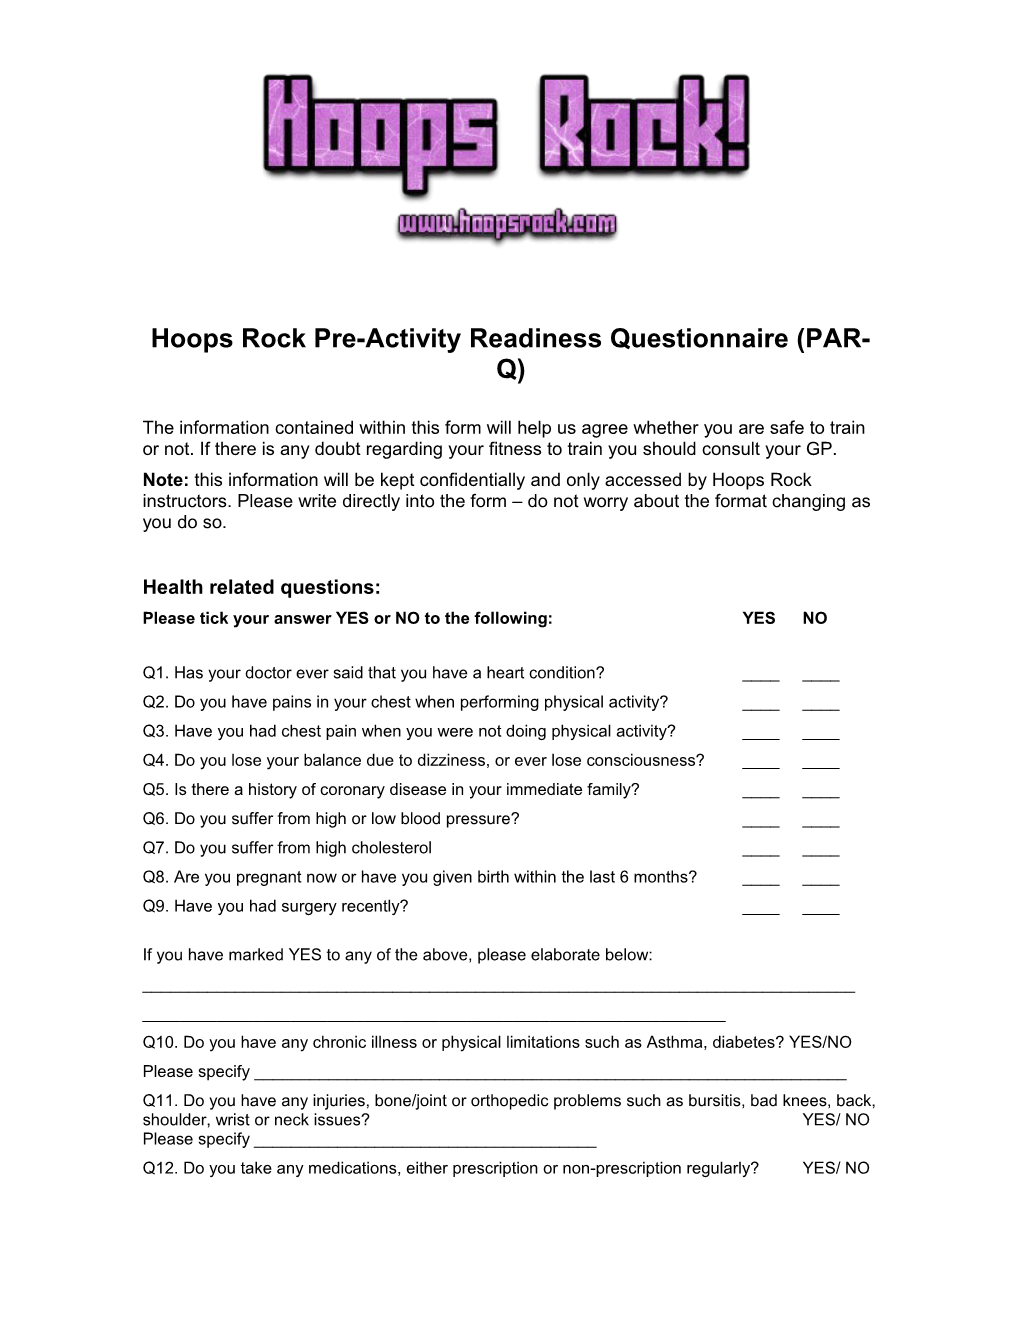 Hoops Rock Pre-Activity Readiness Questionnaire (PAR-Q)